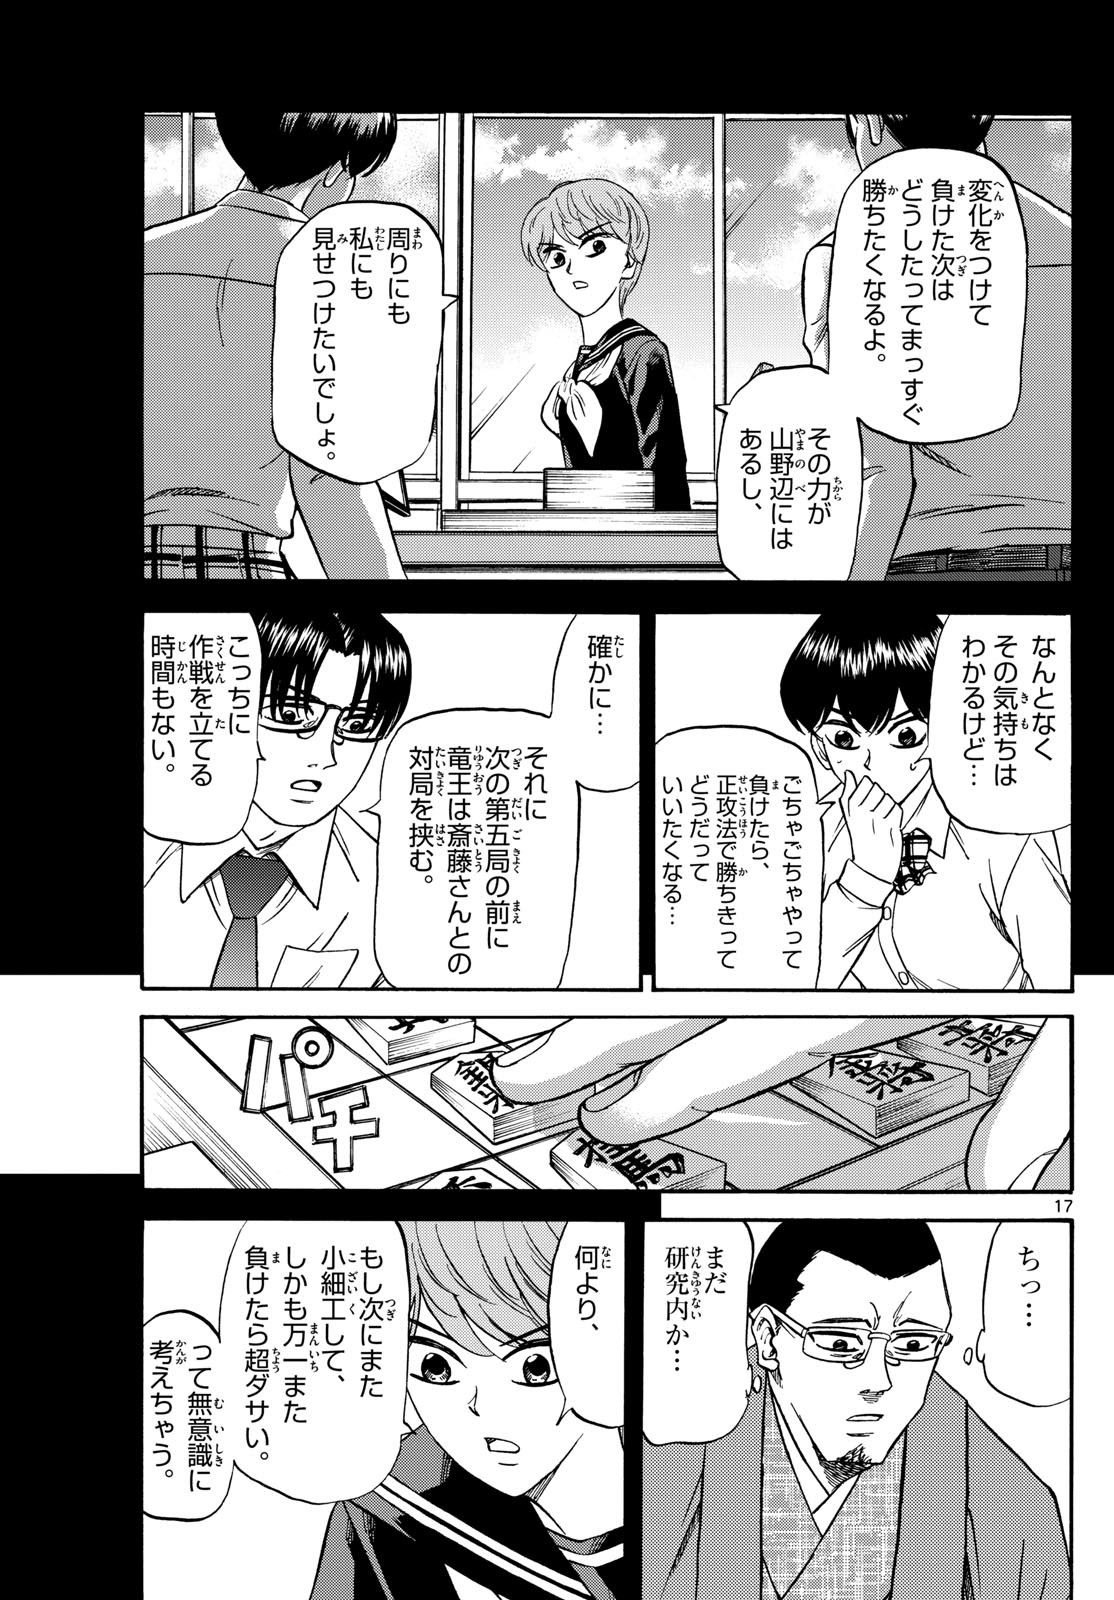 Ryu-to-Ichigo - Chapter 165 - Page 17